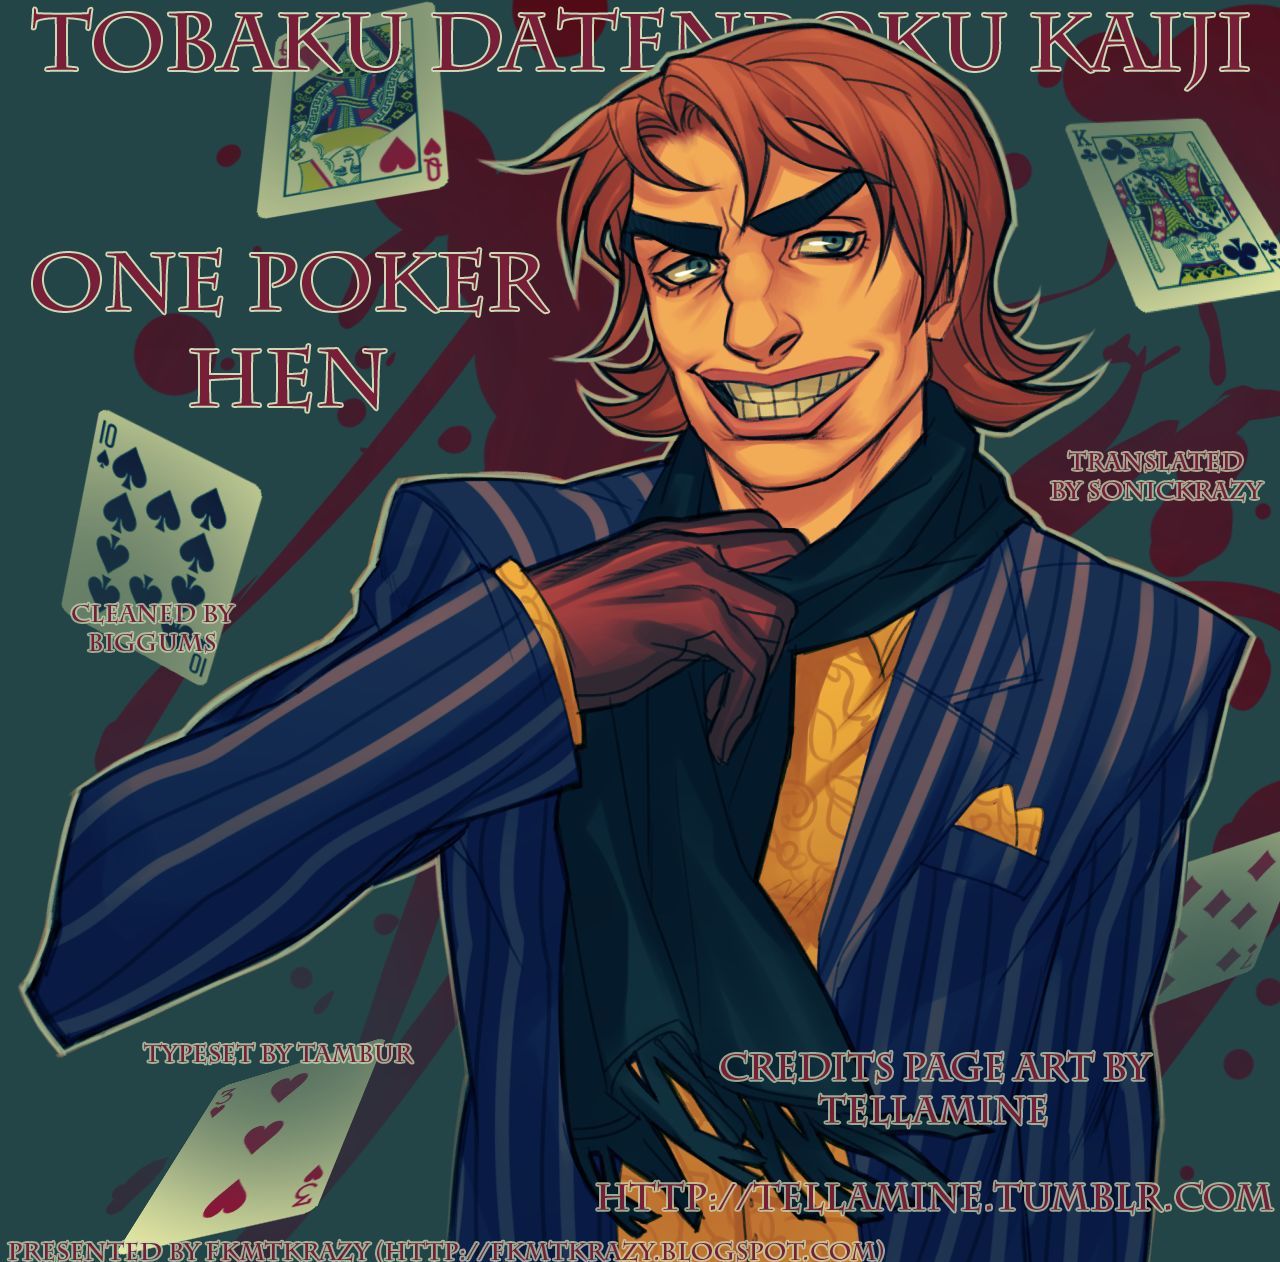 Tobaku Datenroku Kaiji - One Poker Hen 187